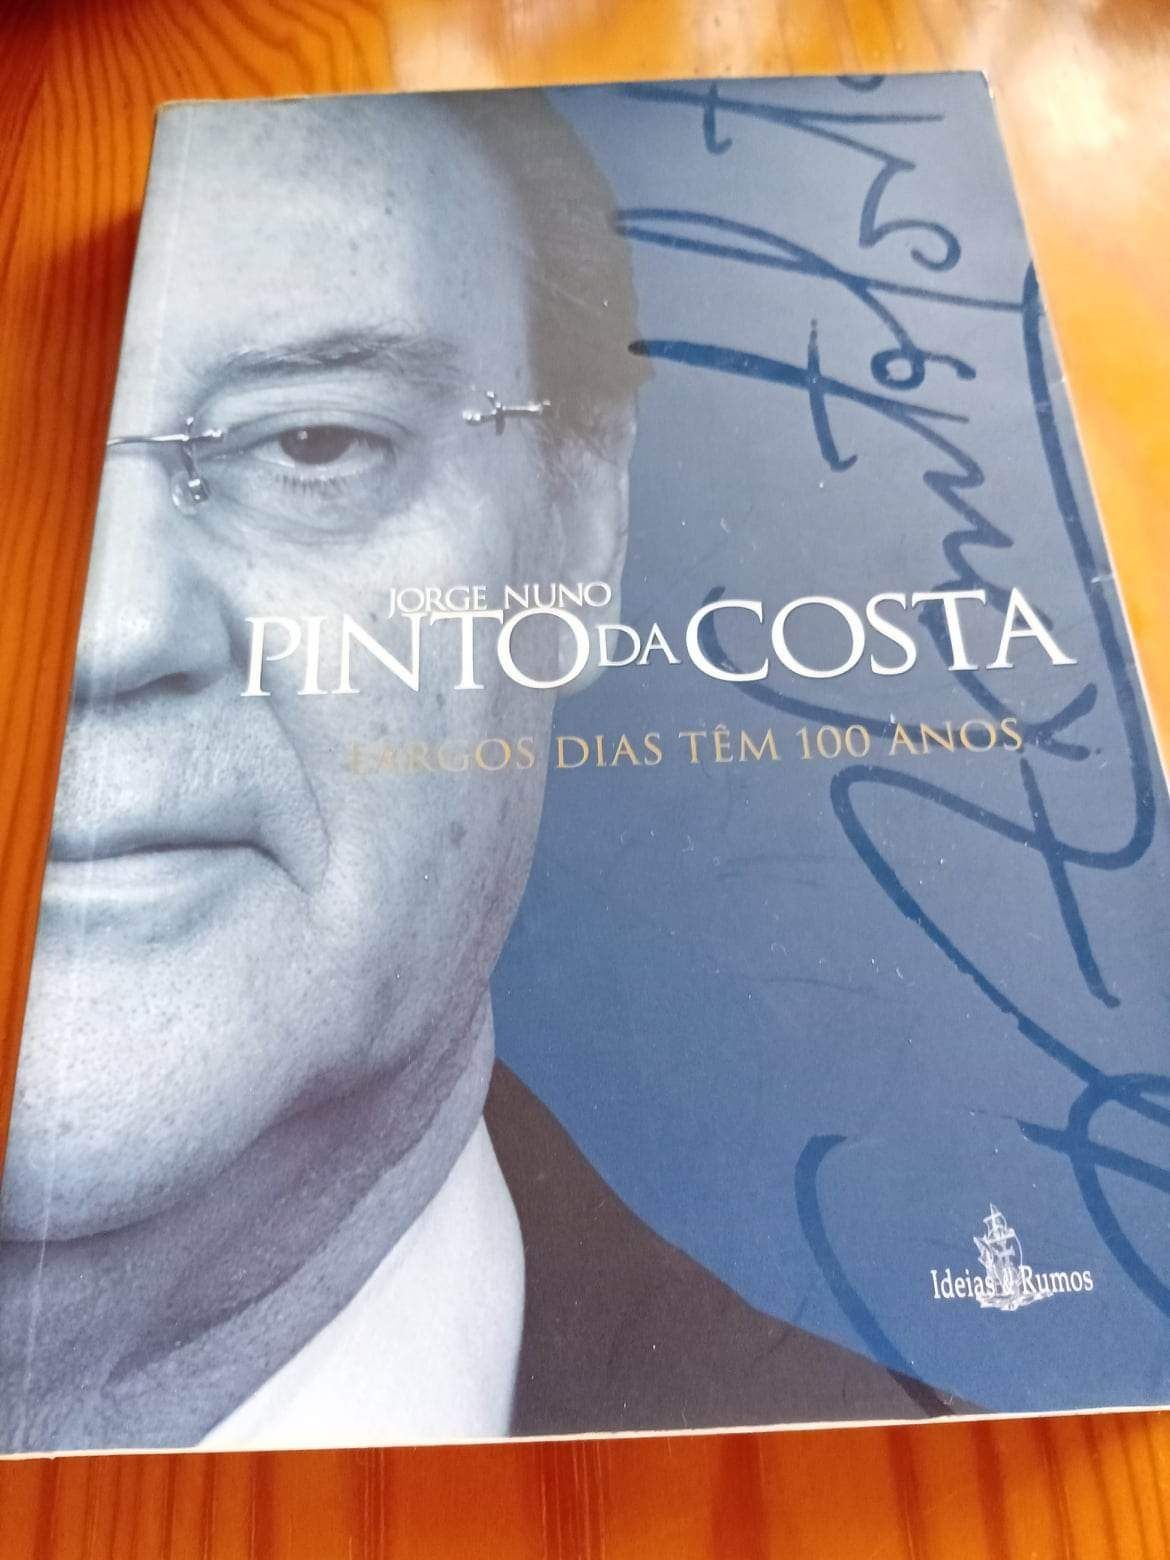 Livro: Largos dias têm 100 anos , Jorge Nuno Pinto da Costa